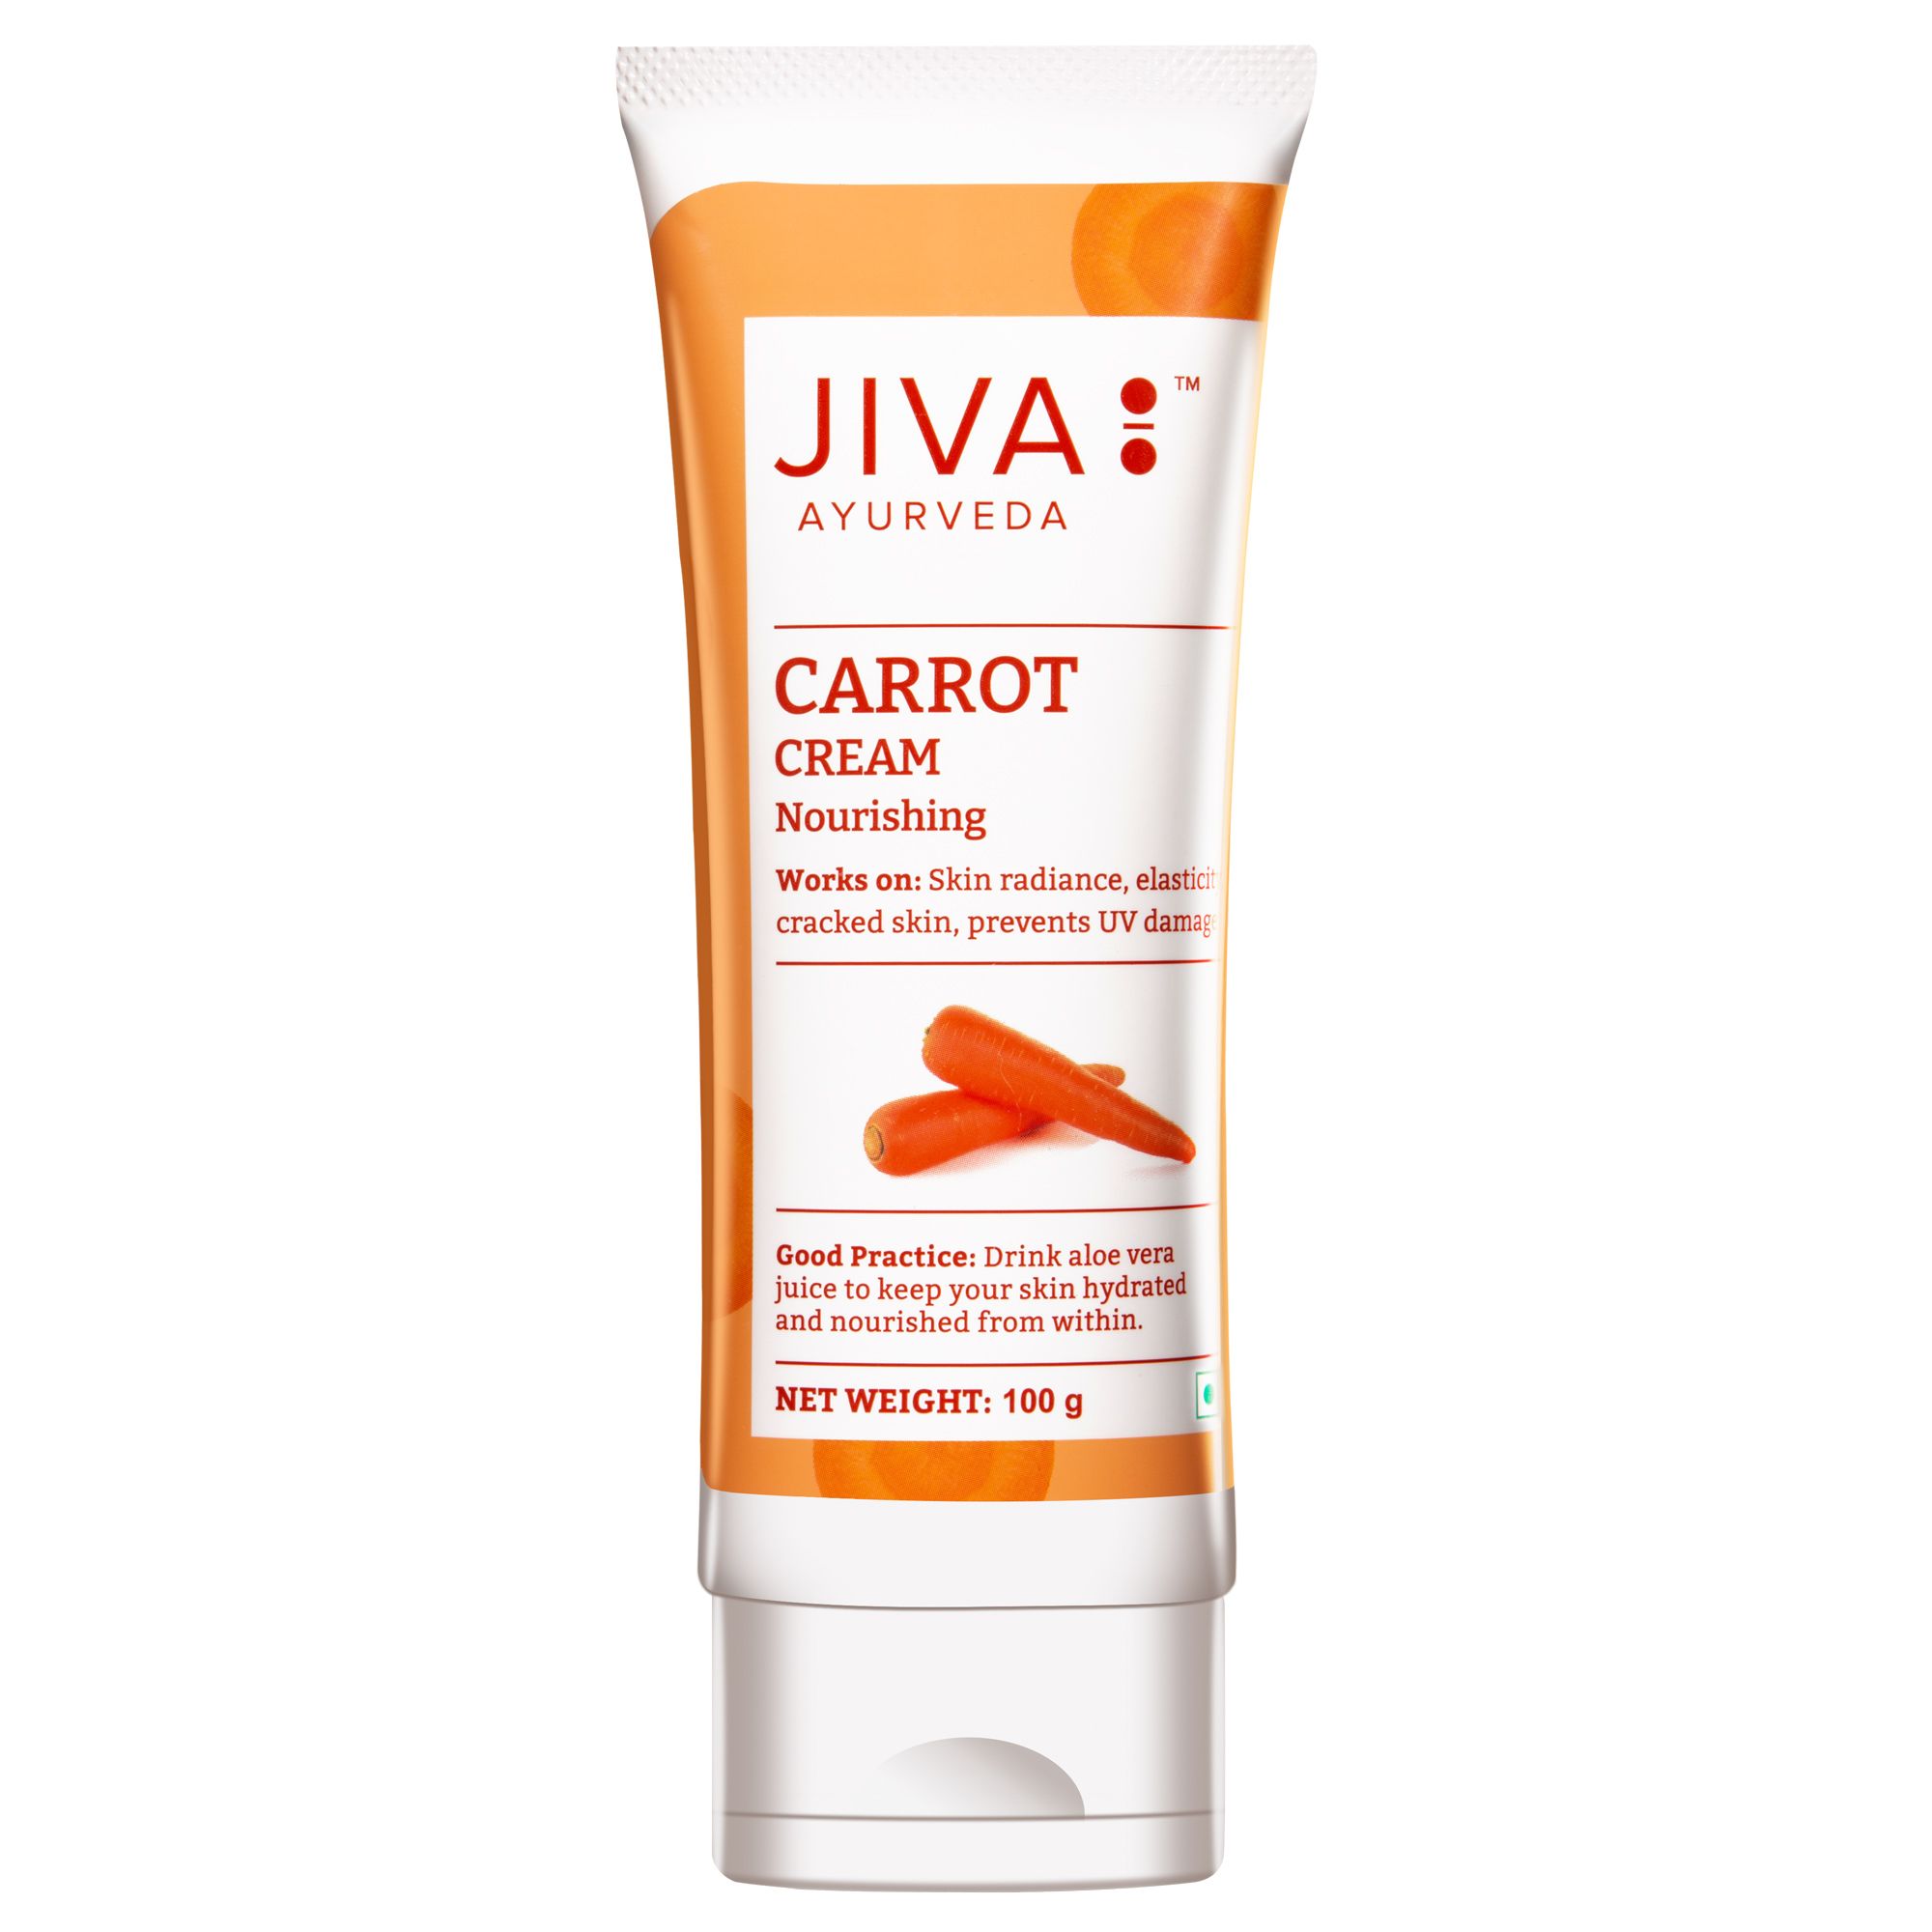 Buy Jiva Ayurveda Carrot Cream at Best Price Online